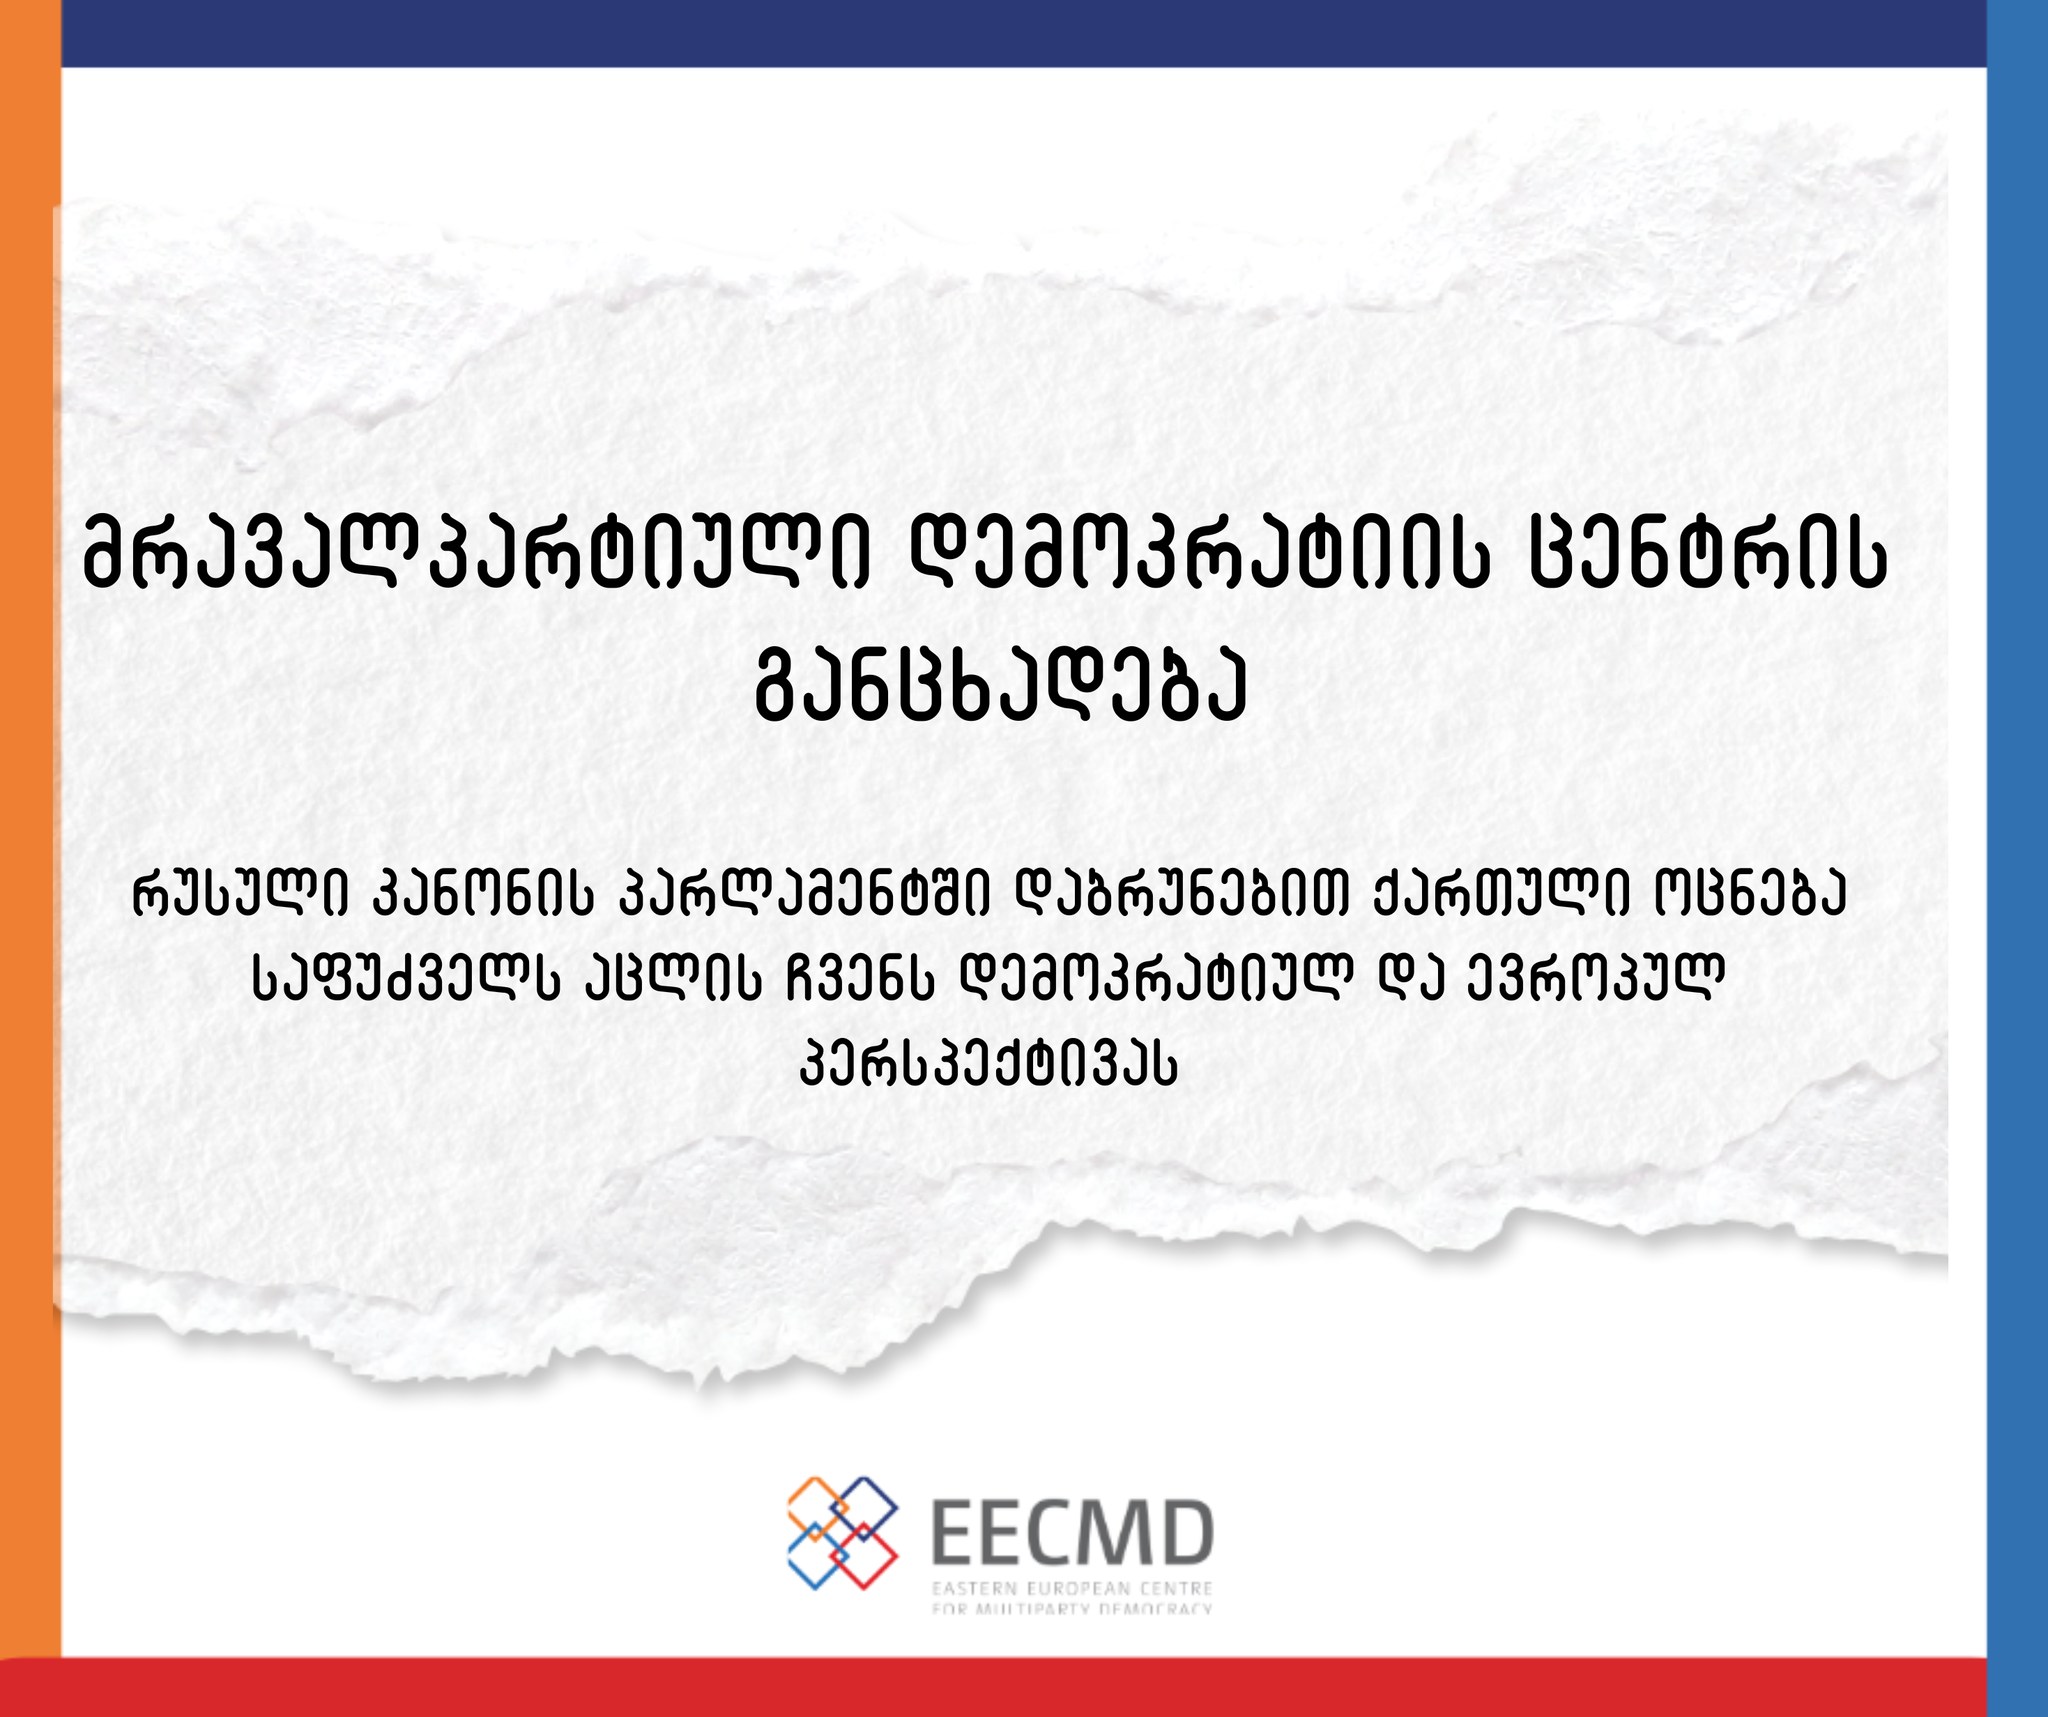 EECMD’s statement